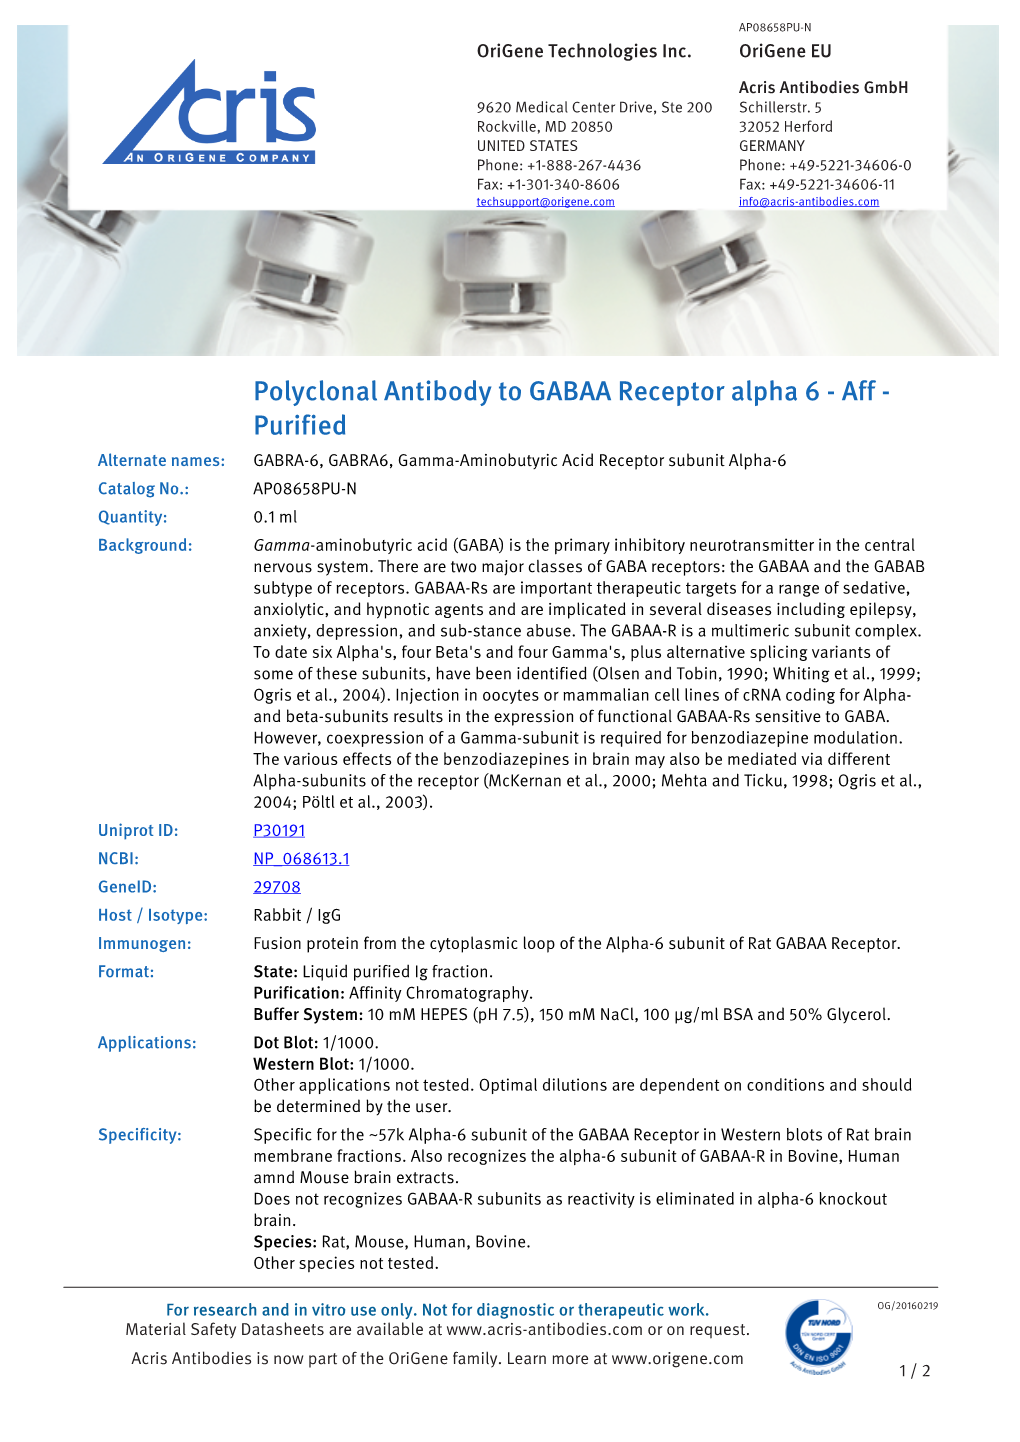 Polyclonal Antibody to GABAA Receptor Alpha 6